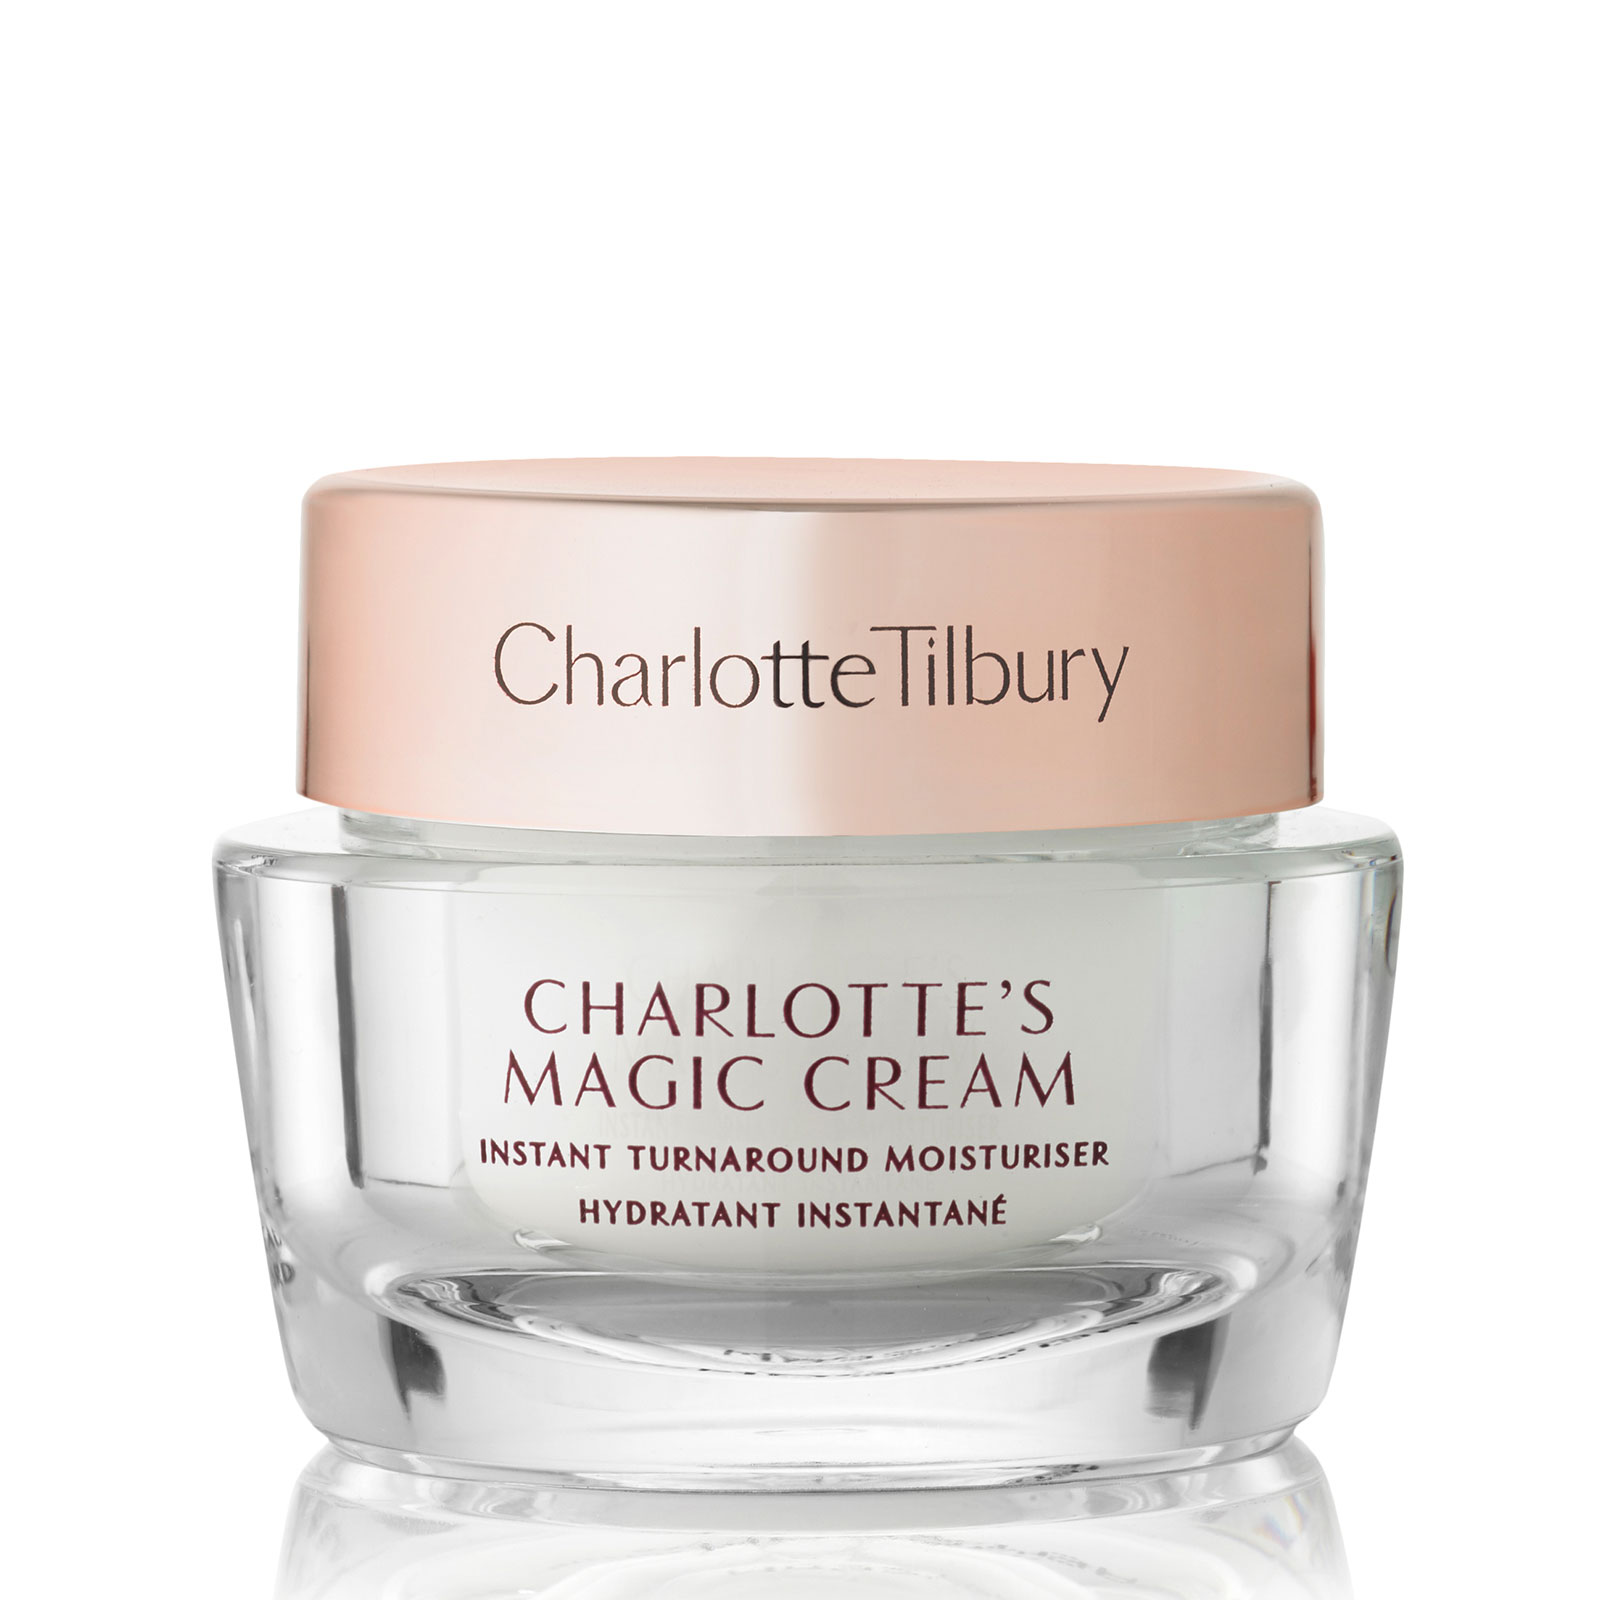 Charlotte Tilbury Magic Cream Moisturiser Travel Size 15ml